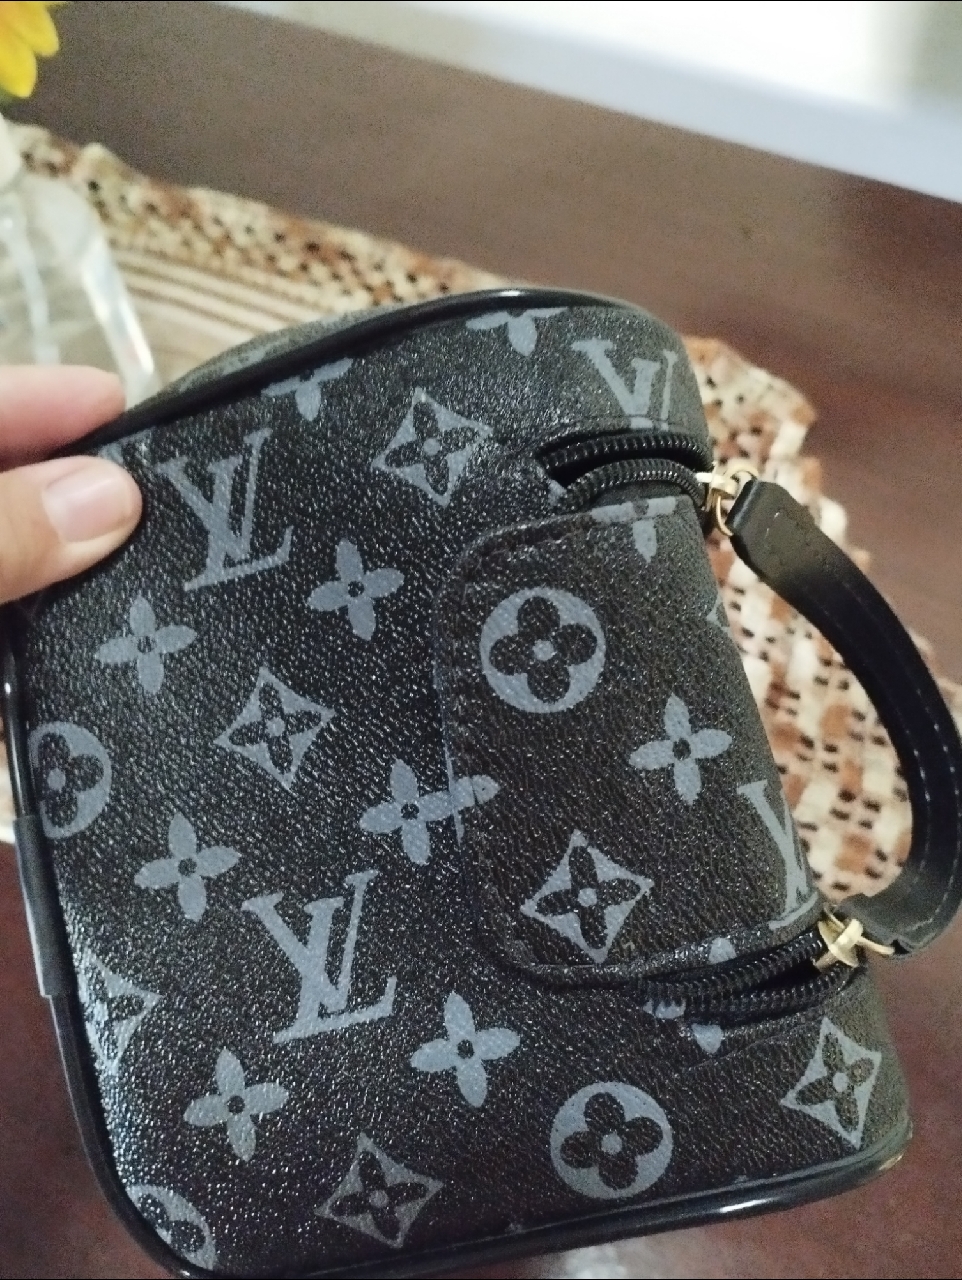 Necessaire bolsa de mão Louis Vuitton porta chuteira